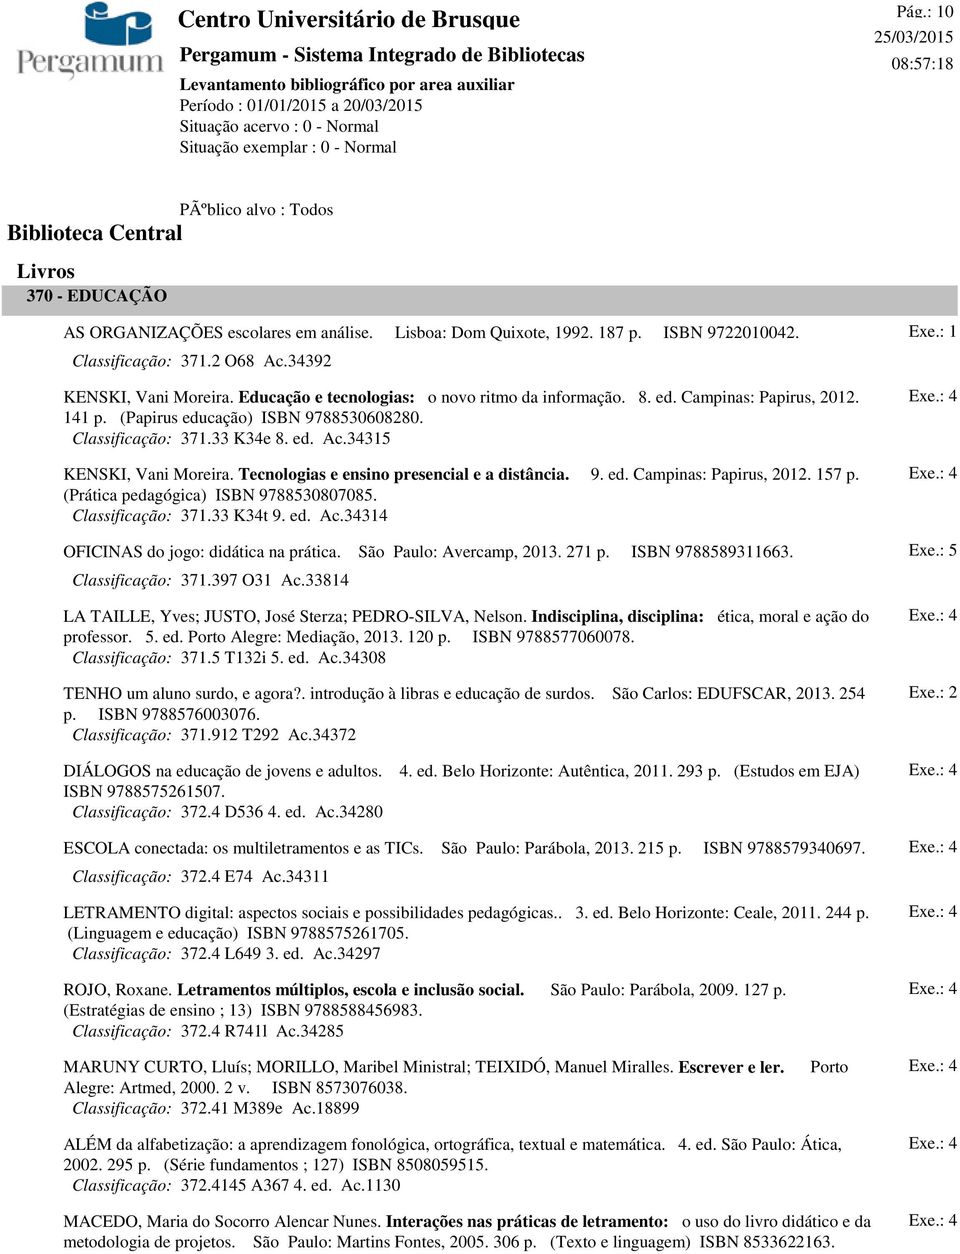 Tecnologias e ensino presencial e a distância. 9. ed. Campinas: Papirus, 2012. 157 p. (Prática pedagógica) ISBN 9788530807085. Classificação: 371.33 K34t 9. ed. Ac.